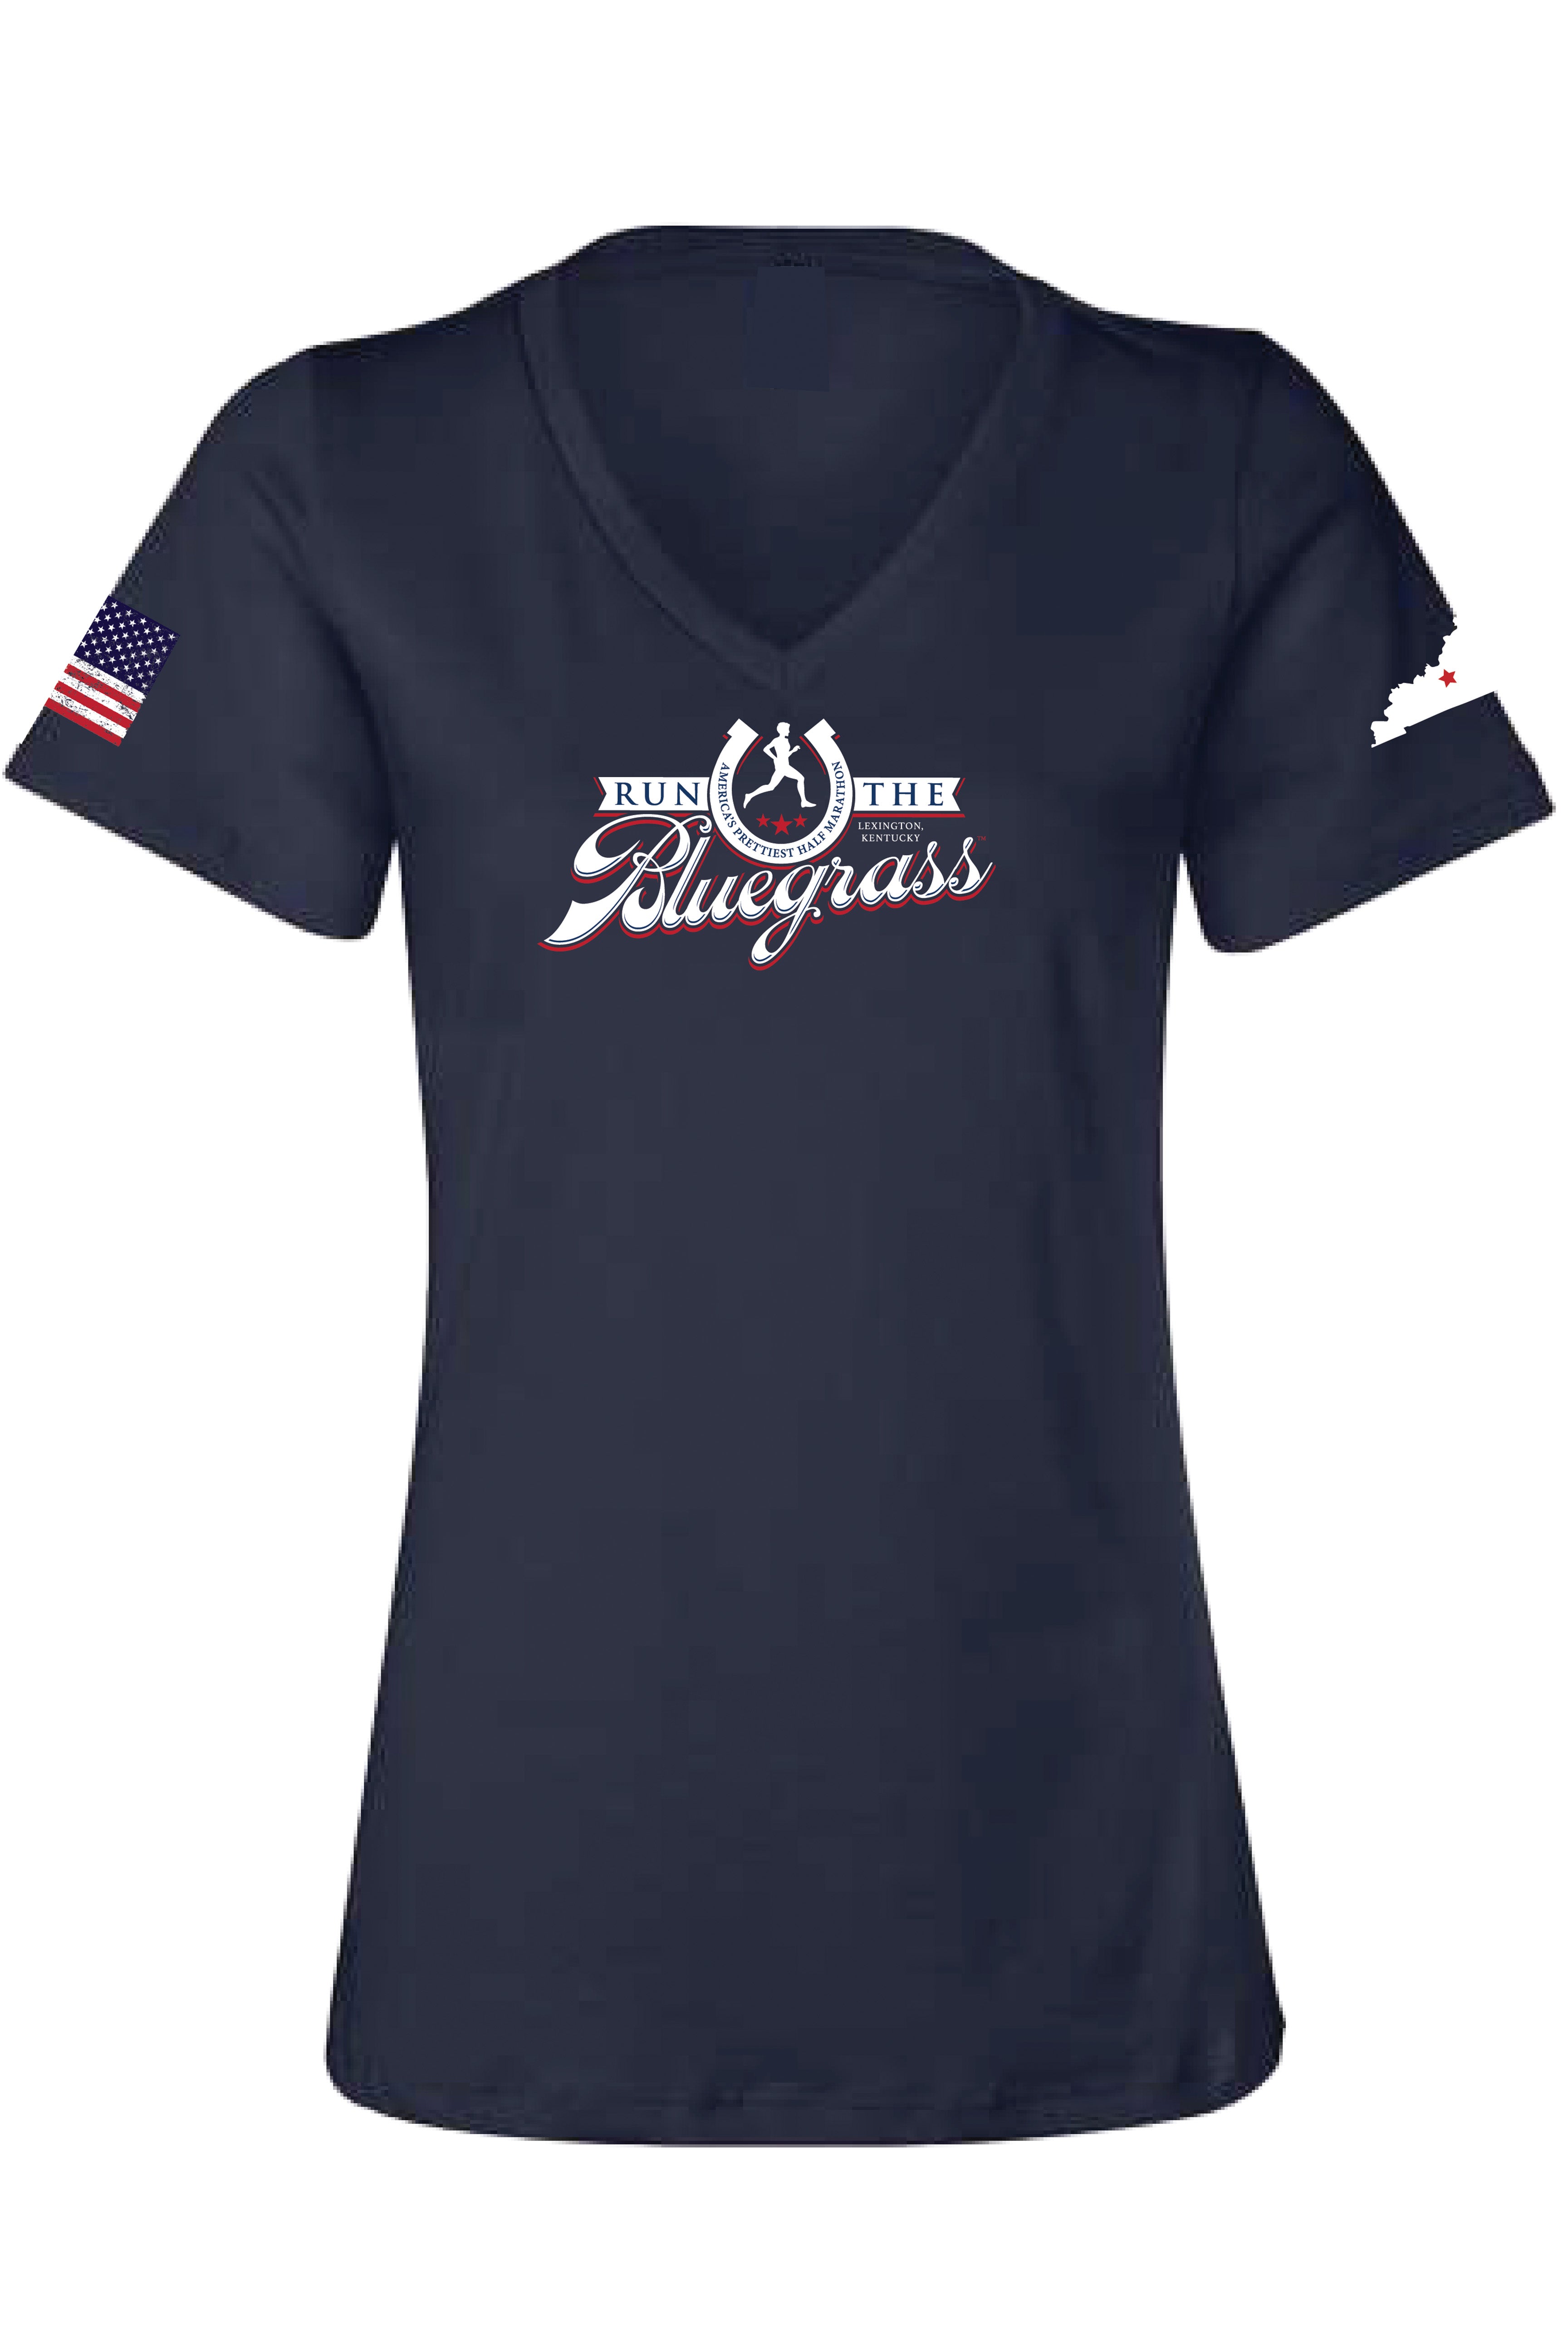 WOMEN'S Official RunTheBluegrass 2023 Race T-Shirt/Navy